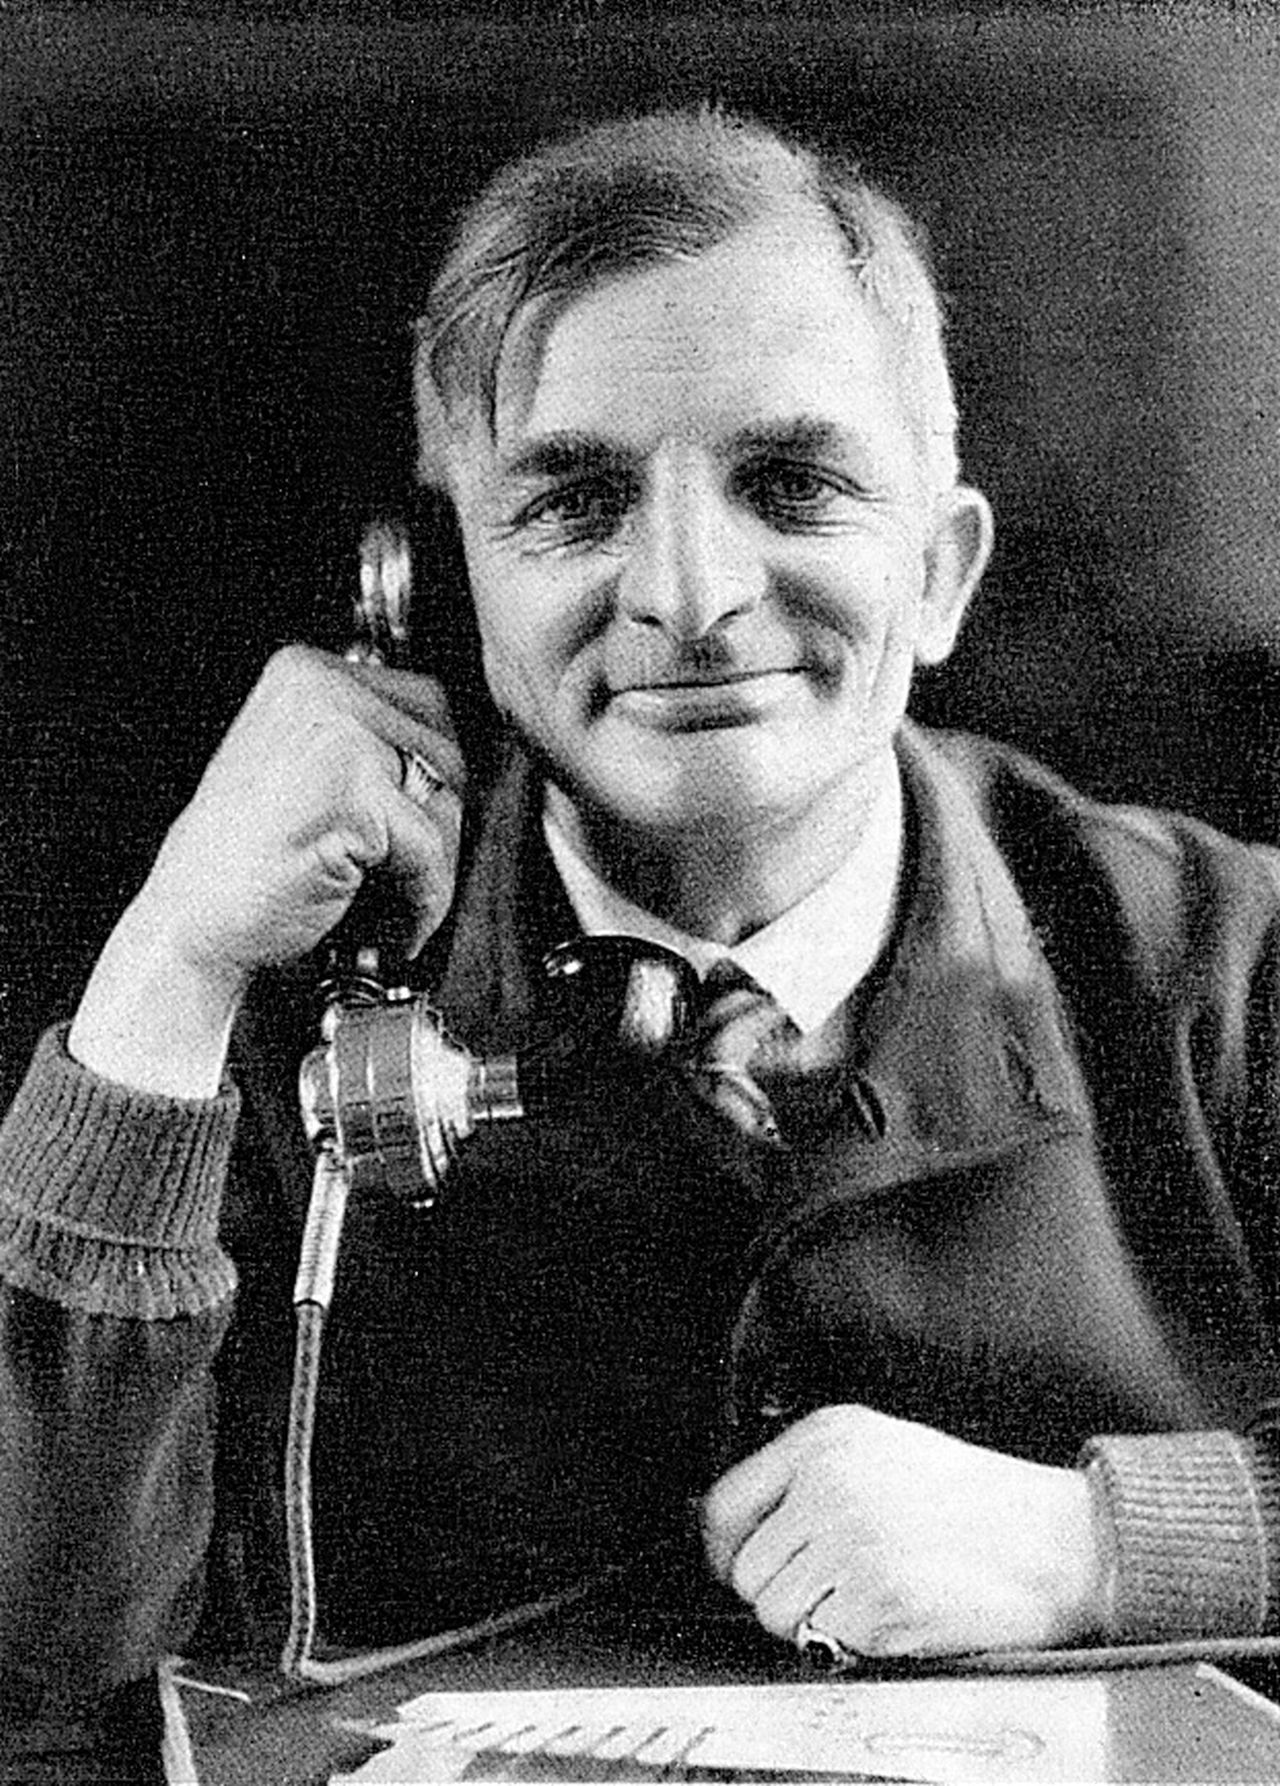 Die undatierte Fotografie zeigt den deutschen Schriftsteller Joachim
Ringelnatz bei einem Telefongespräch.